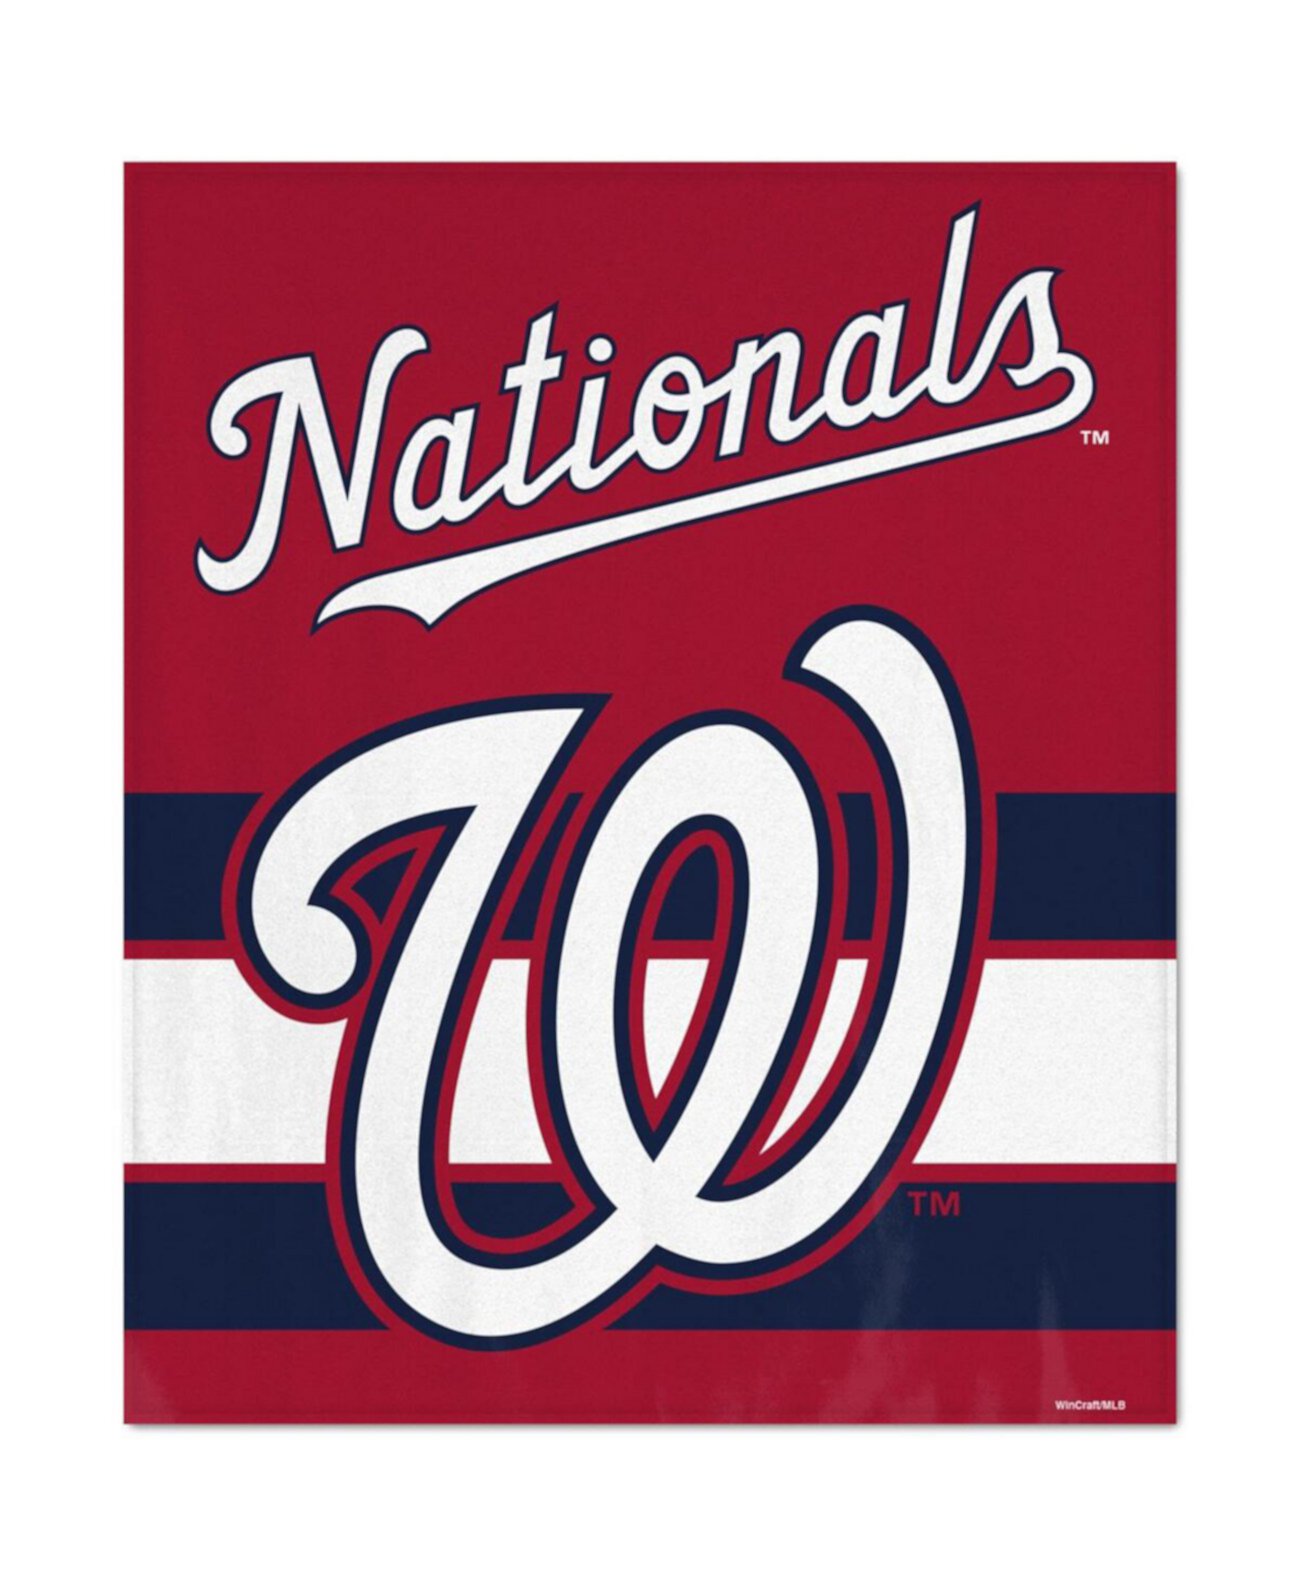 Ультраплюшевое покрывало Washington Nationals размером 50 x 60 дюймов Wincraft